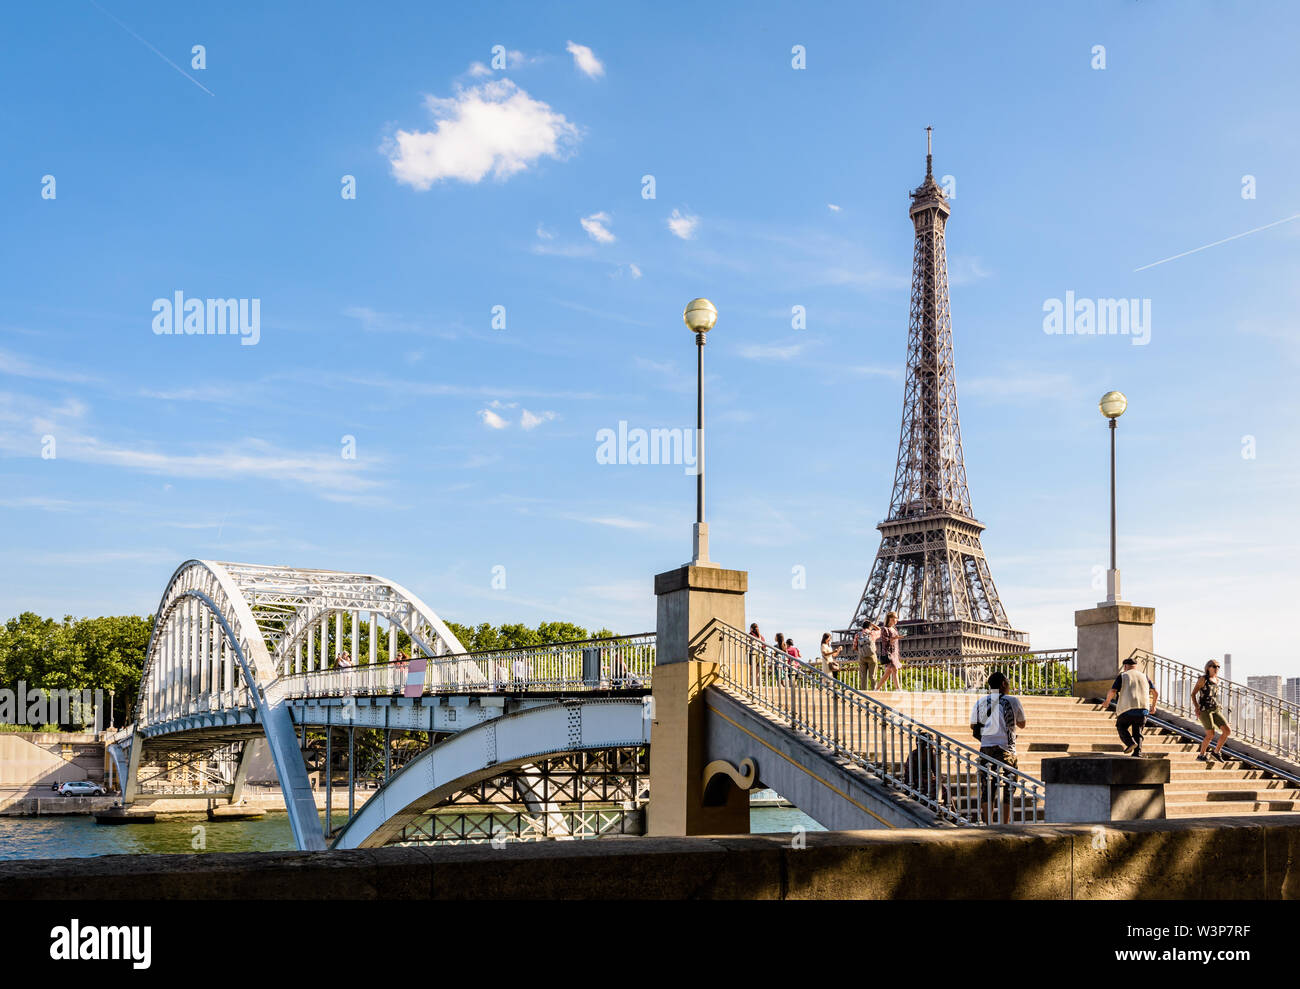 La passerelle Debilly est un piéton par arch bridge sur la rivière Seine, construit en 1900 non loin de la Tour Eiffel à Paris, France. Banque D'Images